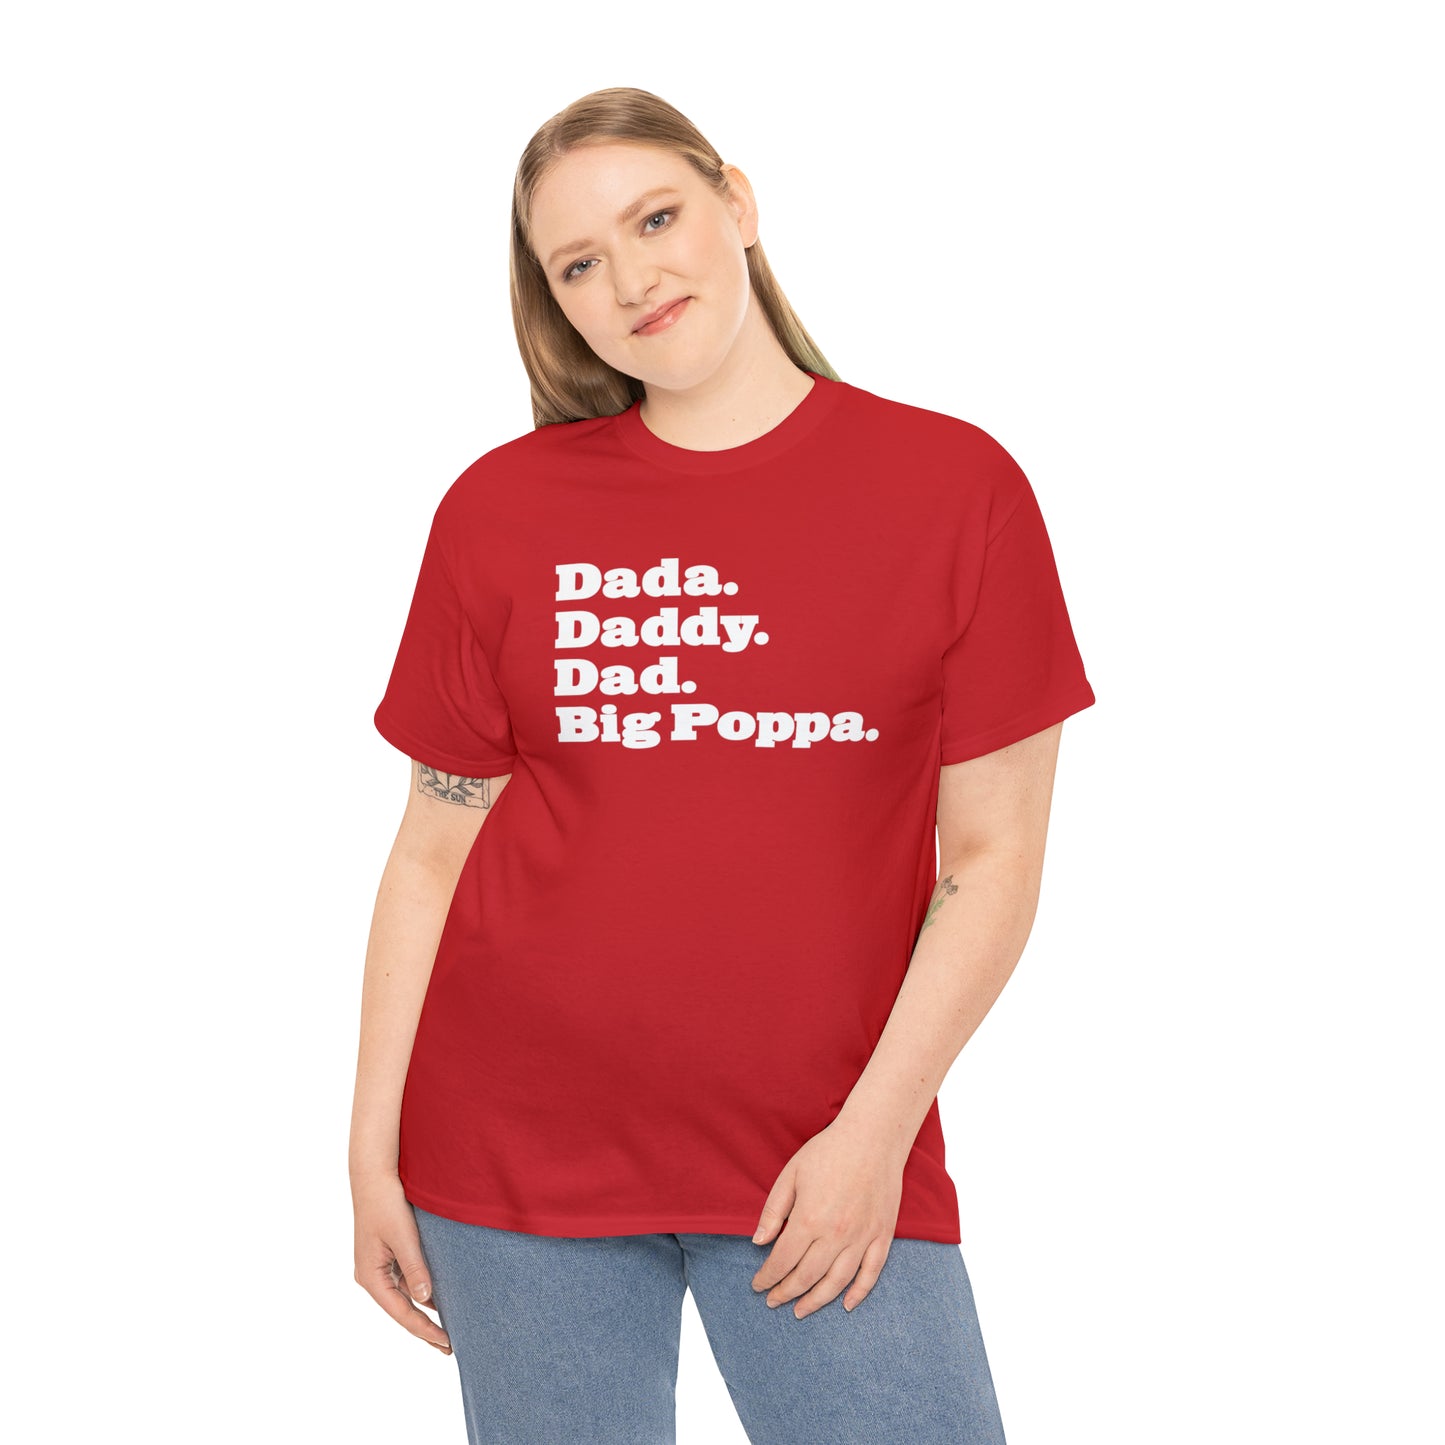 Dada Daddy Dad Big Poppa Shirt Great Father's Day Gift for Dada Daddy Dad Big Poppa T-Shirt for Dad